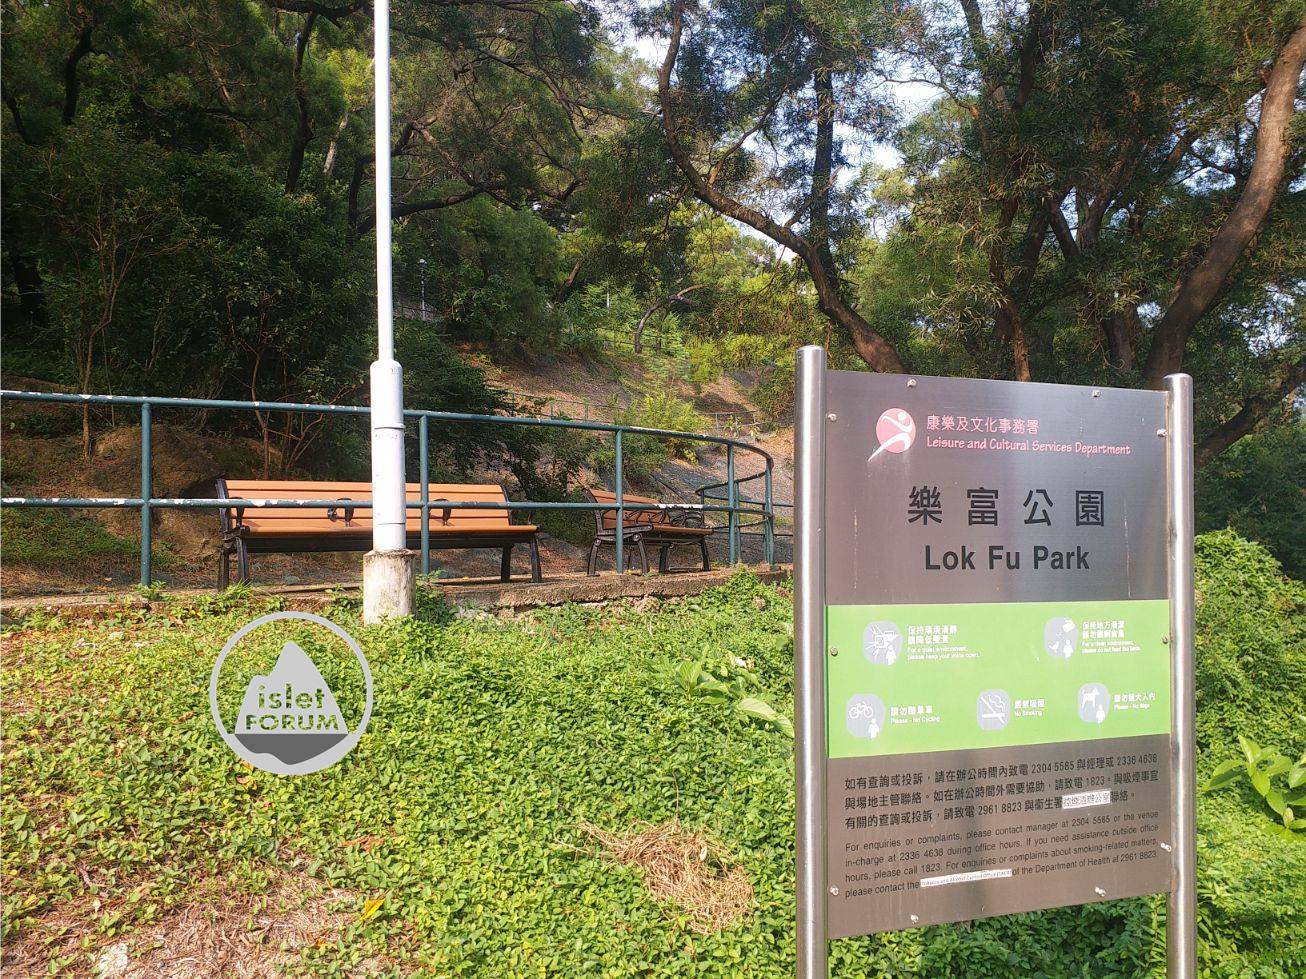 樂富公園 lok fu park (23).jpg